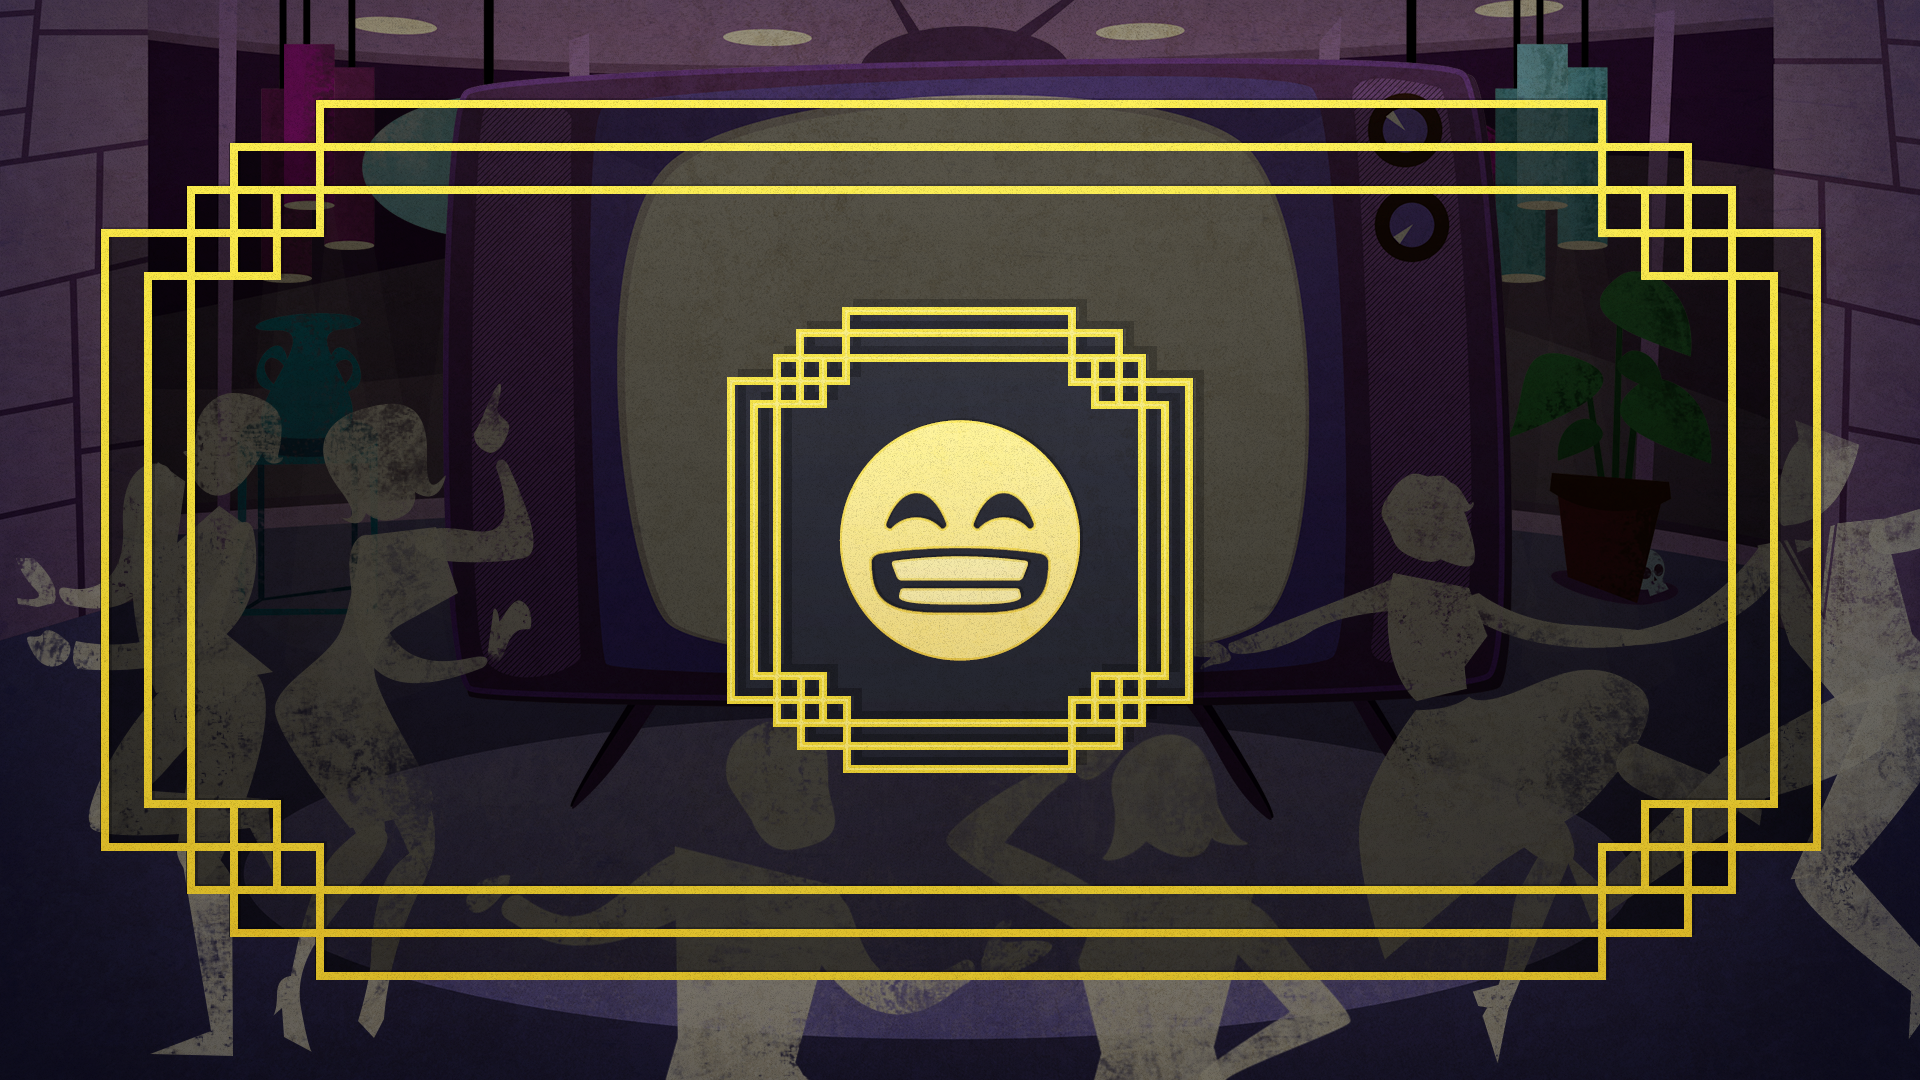 Icon for Emoji-noji